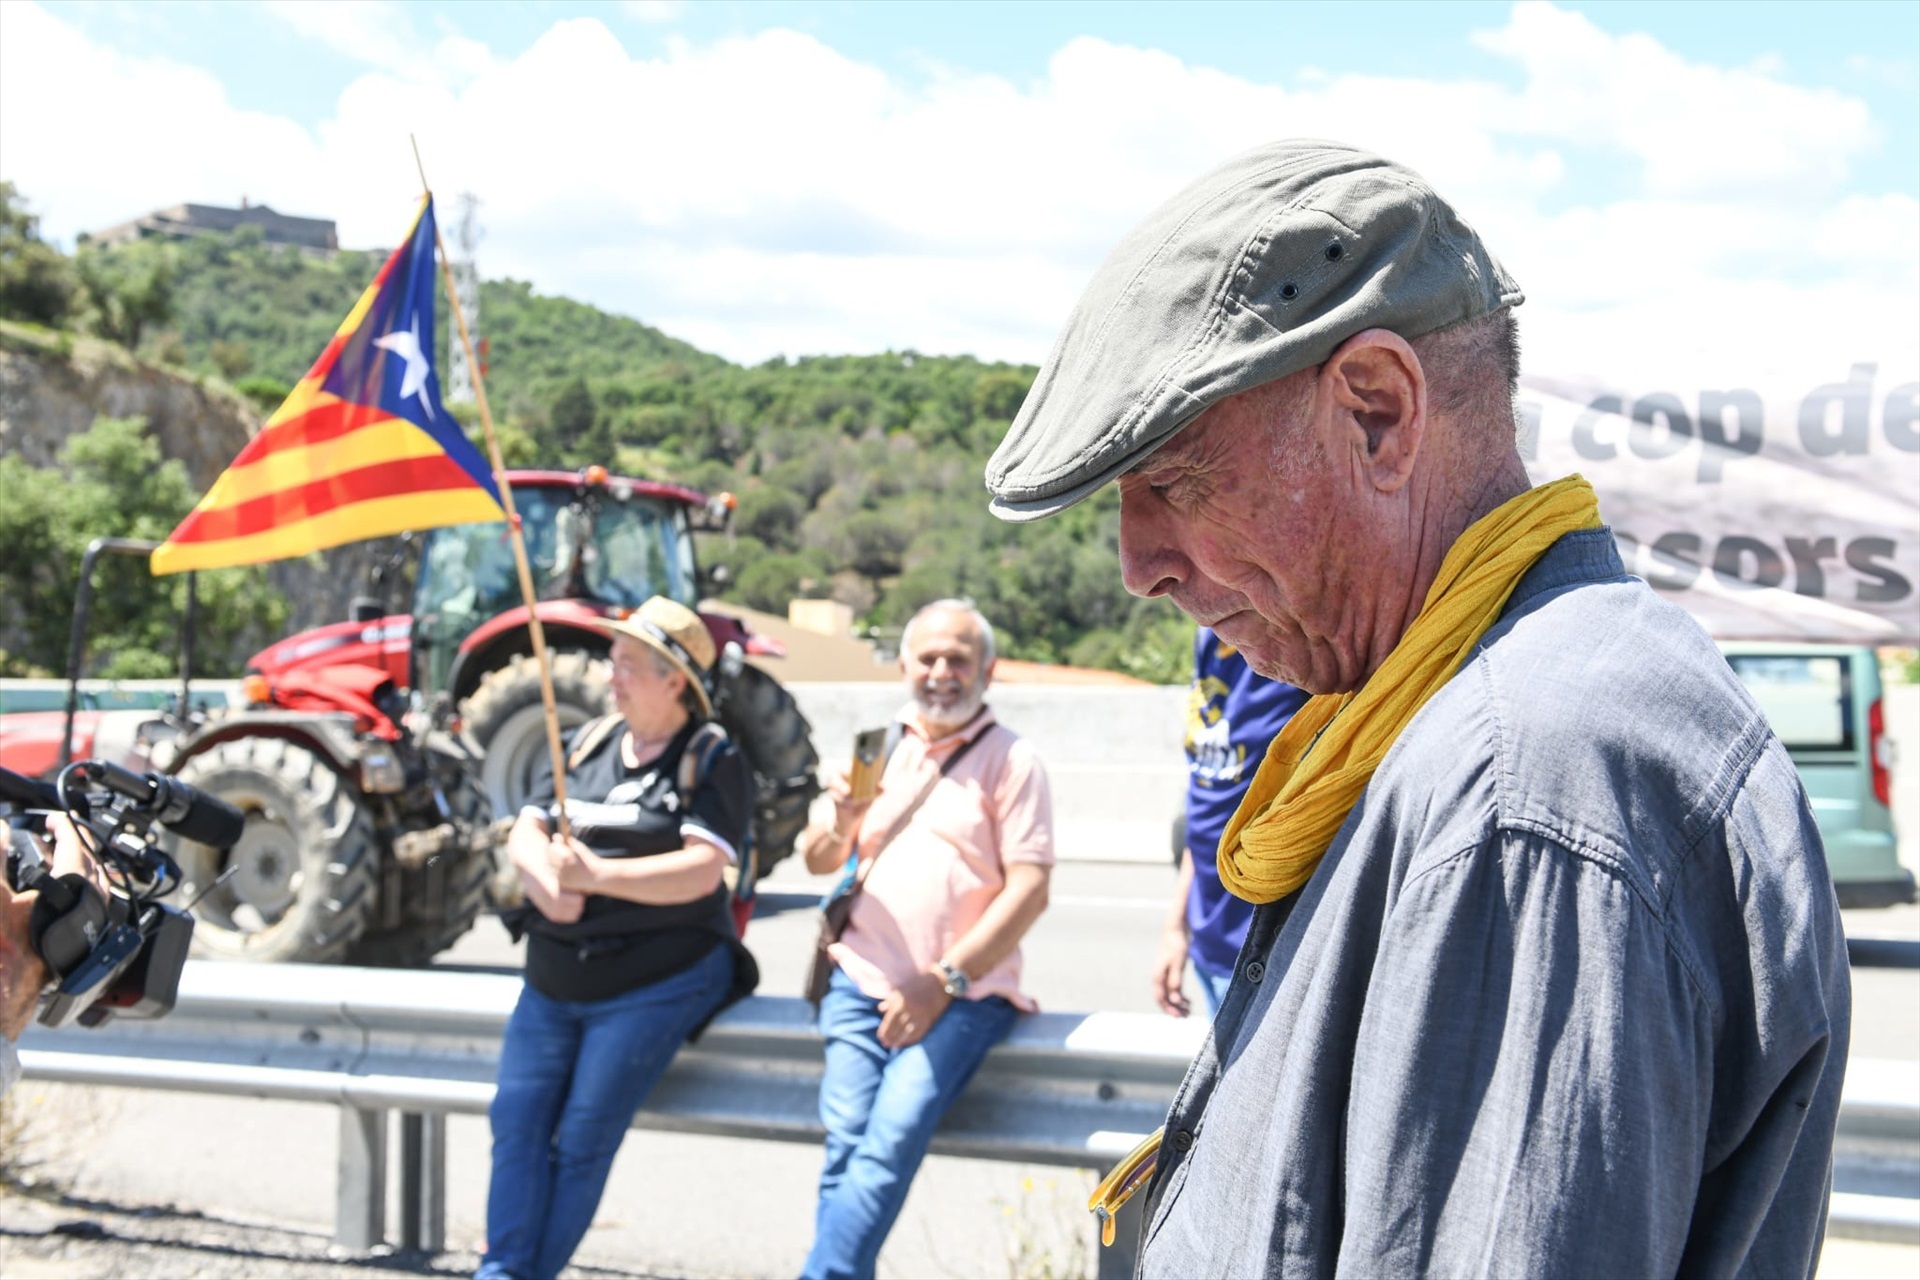 Lluís Llach pone la ANC al servicio de Puigdemont y advierte a ERC sobre su "suicidio" si apoya a Illa